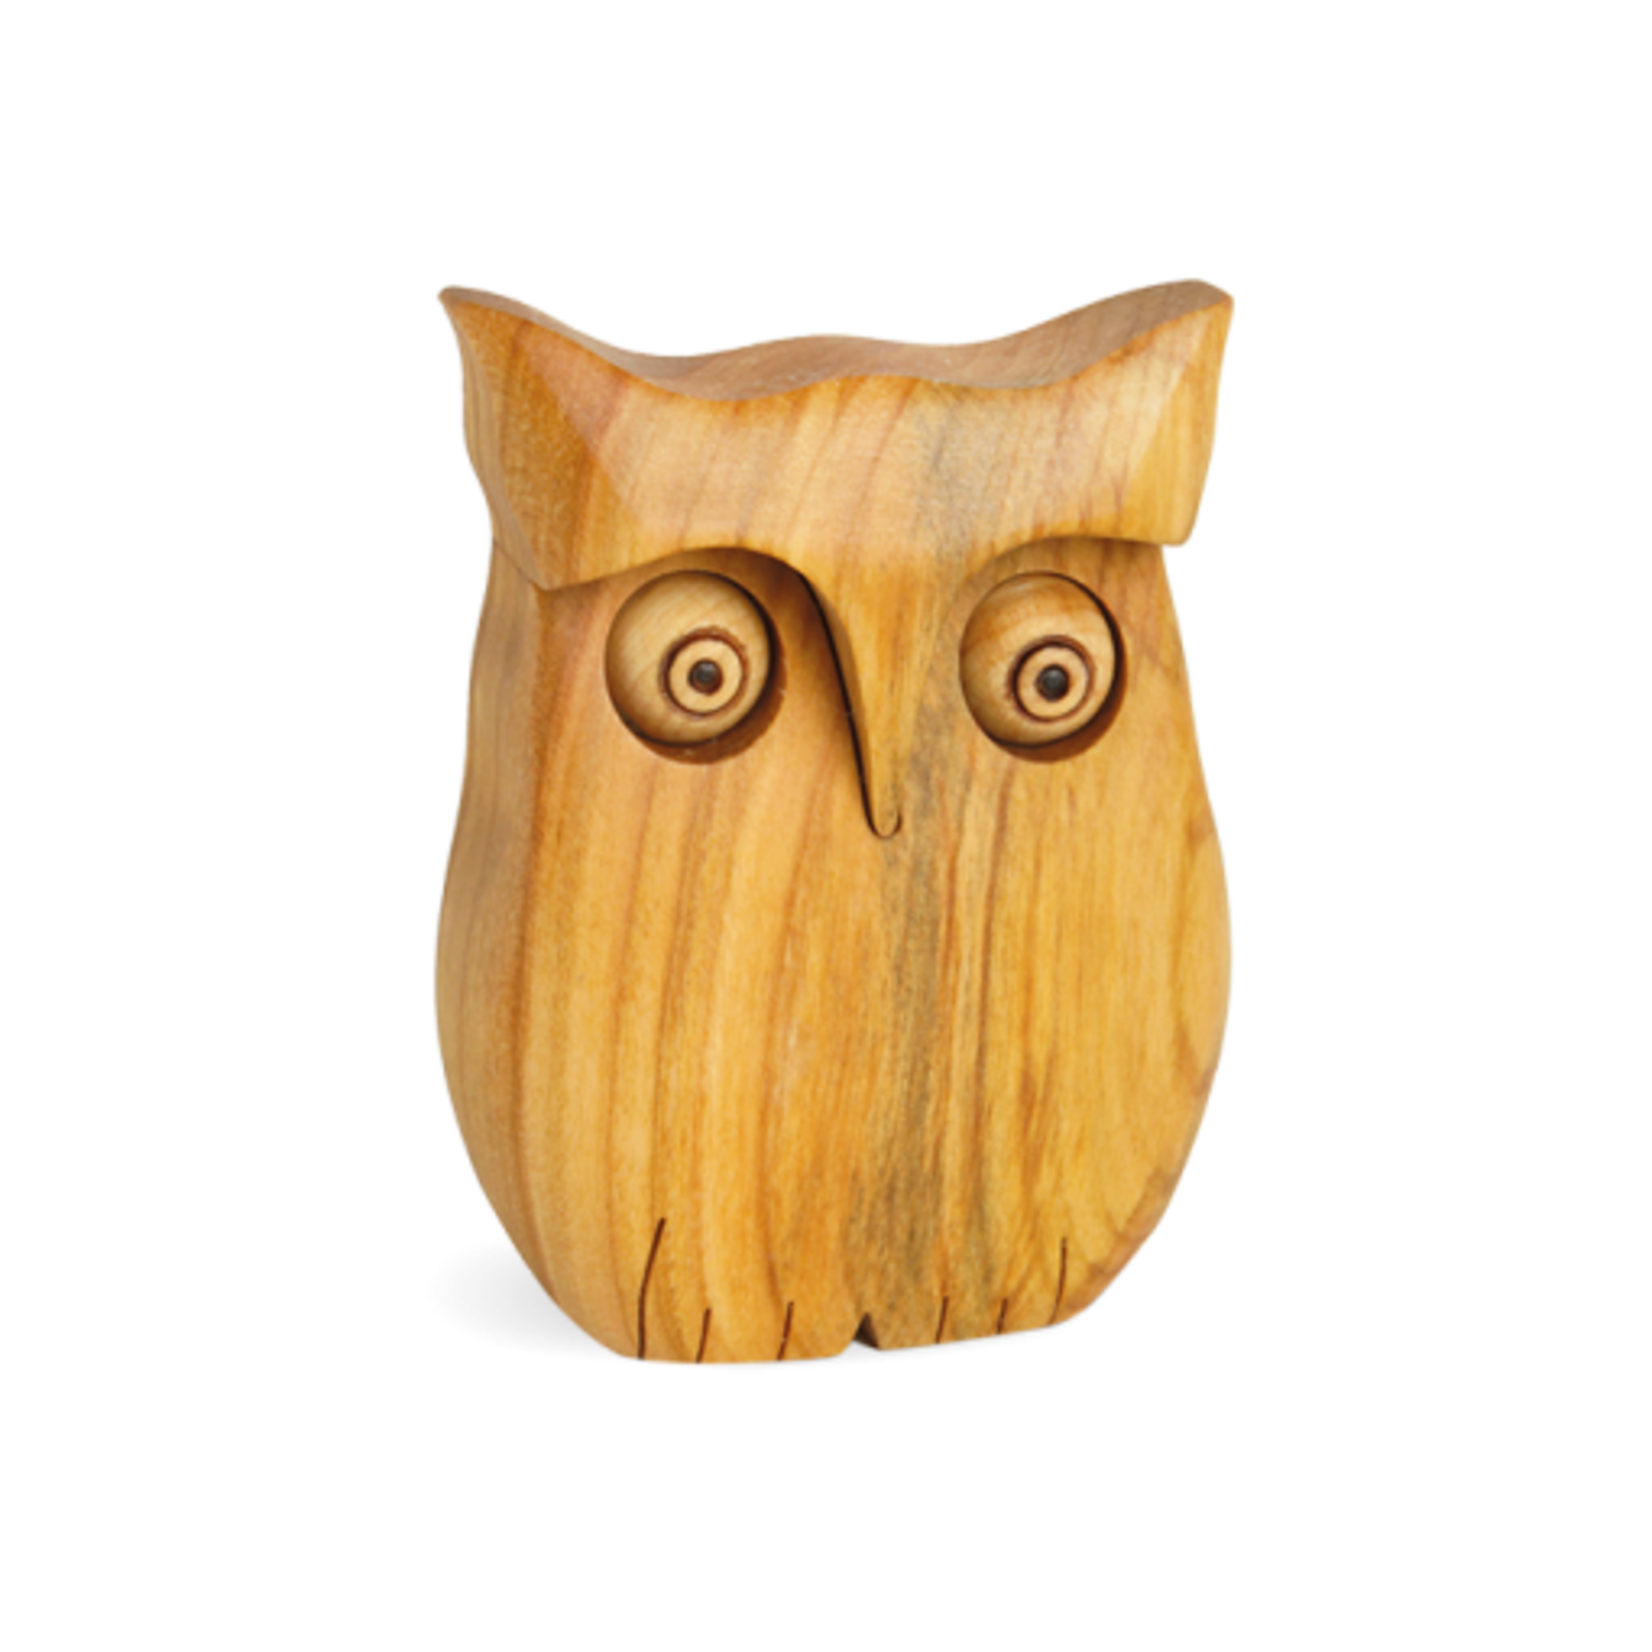 Waldfabrik Wooden Owl 9 cm